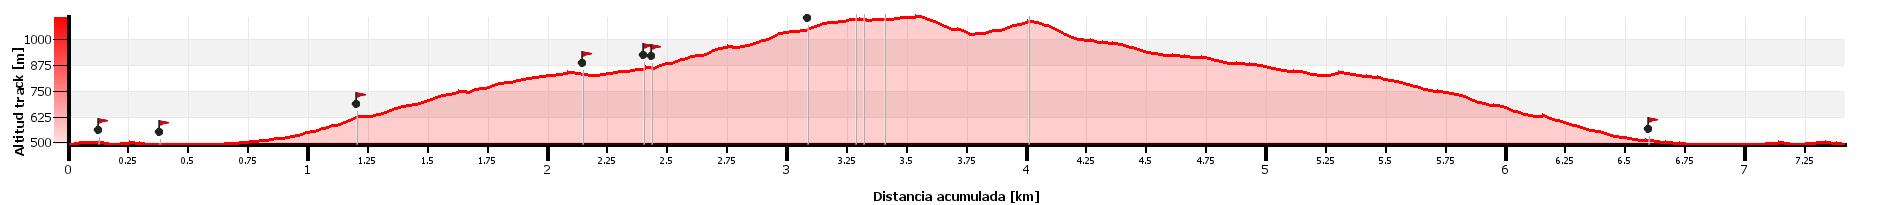 Altimetría - Vía Nautilus Original - Montgròs - Montserrat - RocJumper